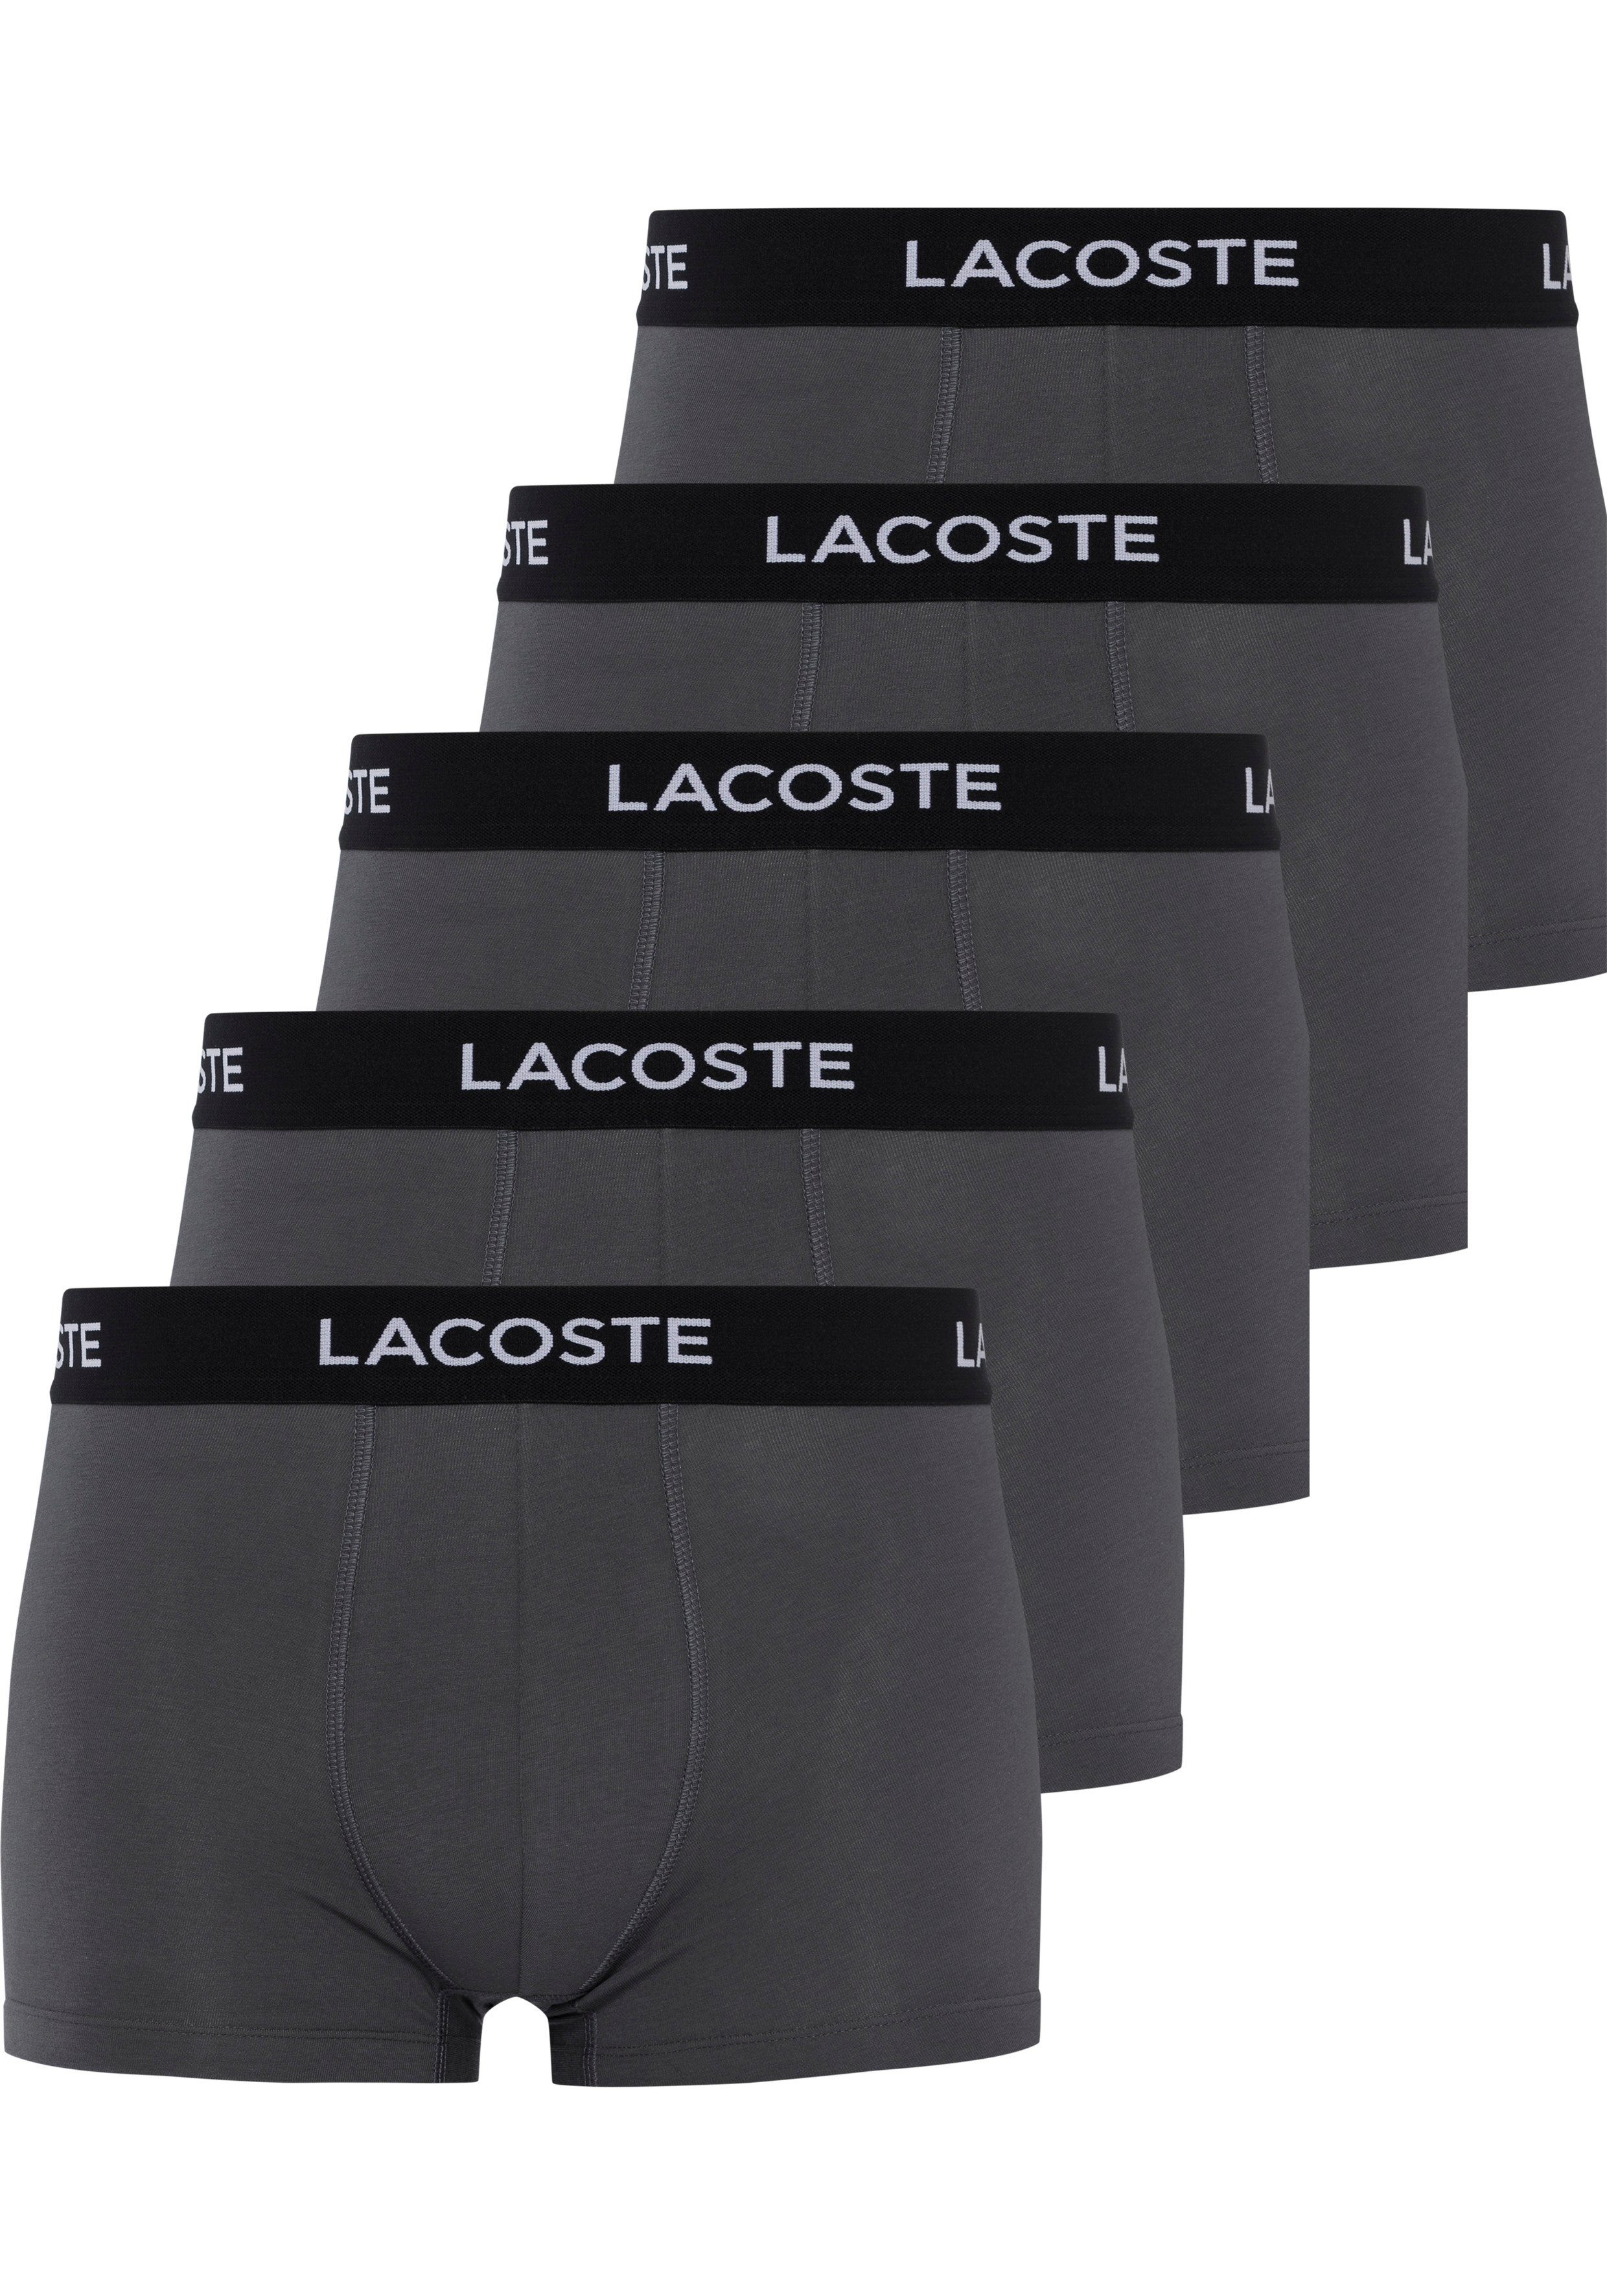 Lacoste Boxershorts (Packung, Bund mit grau-schwarz-weiß 5er-Pack) 5-St., am Lacoste-Schriftzug